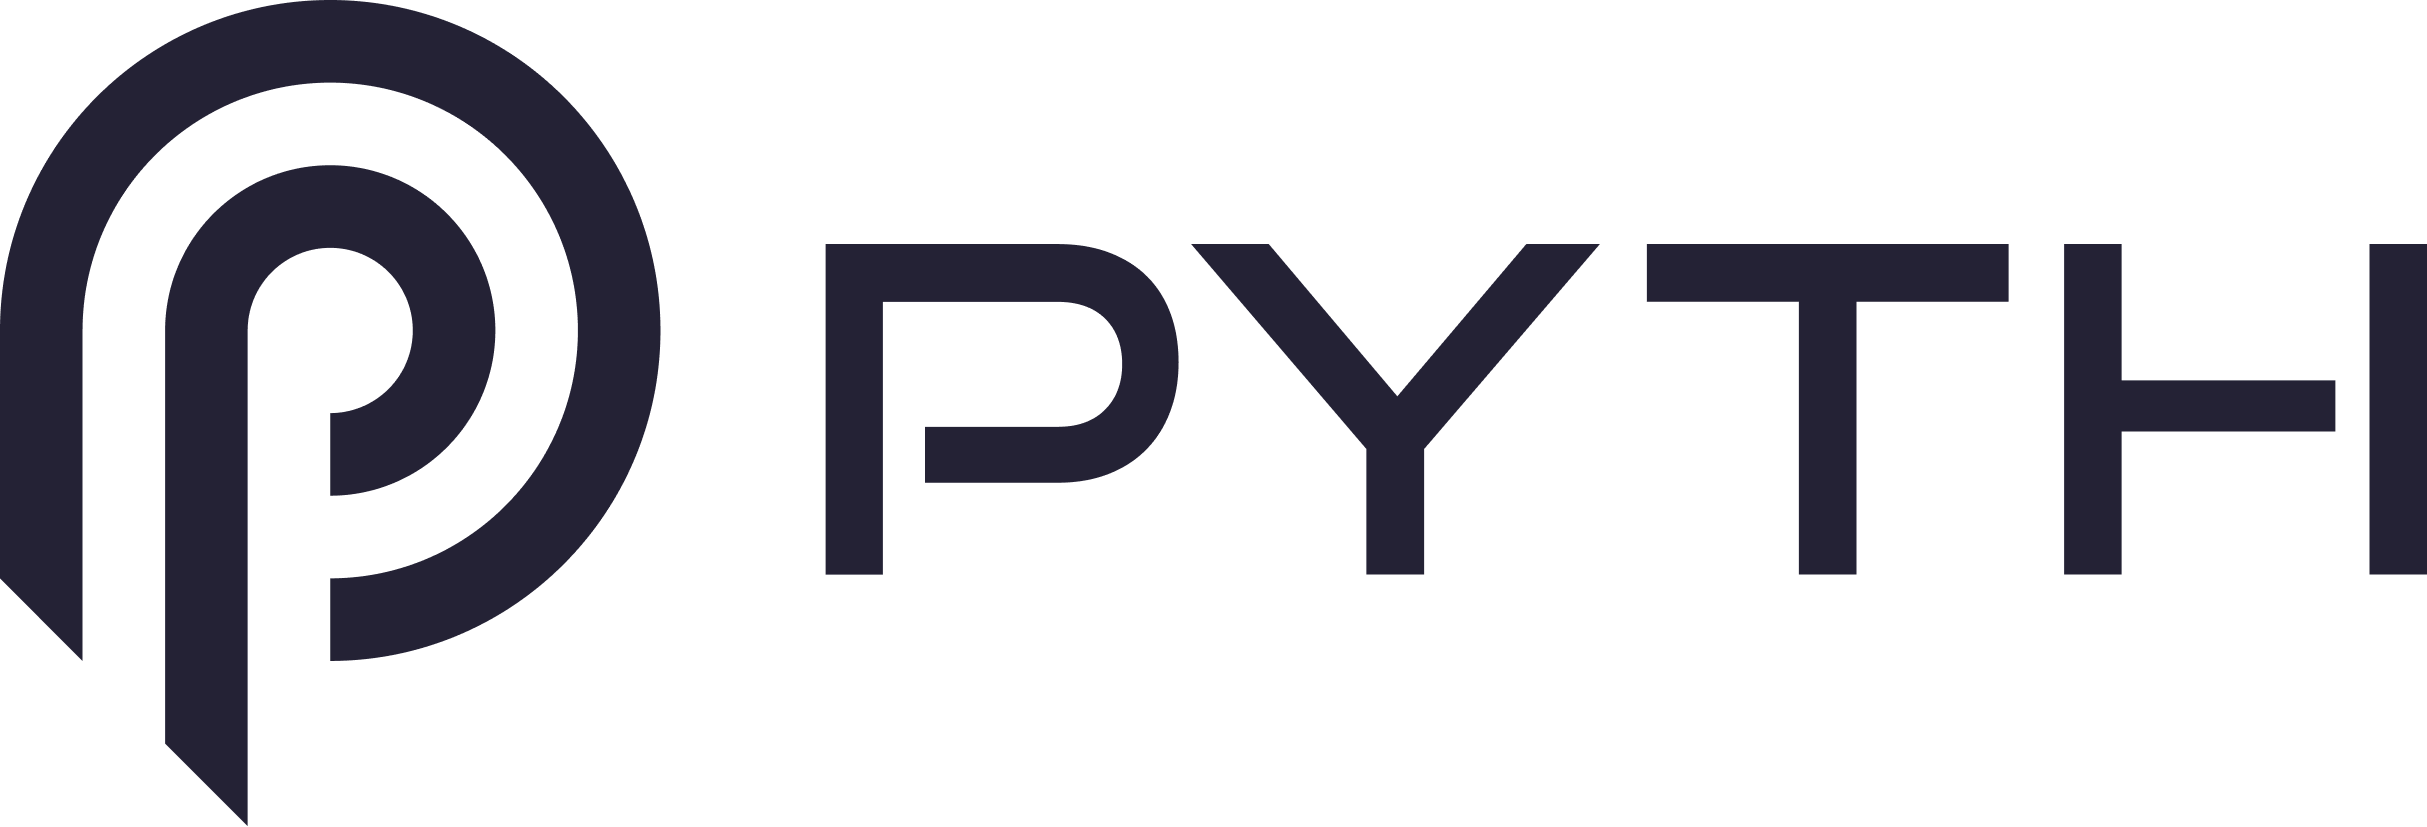 Was ist ein Pyth-Netzwerk? $PYTH – Asien-Krypto heute